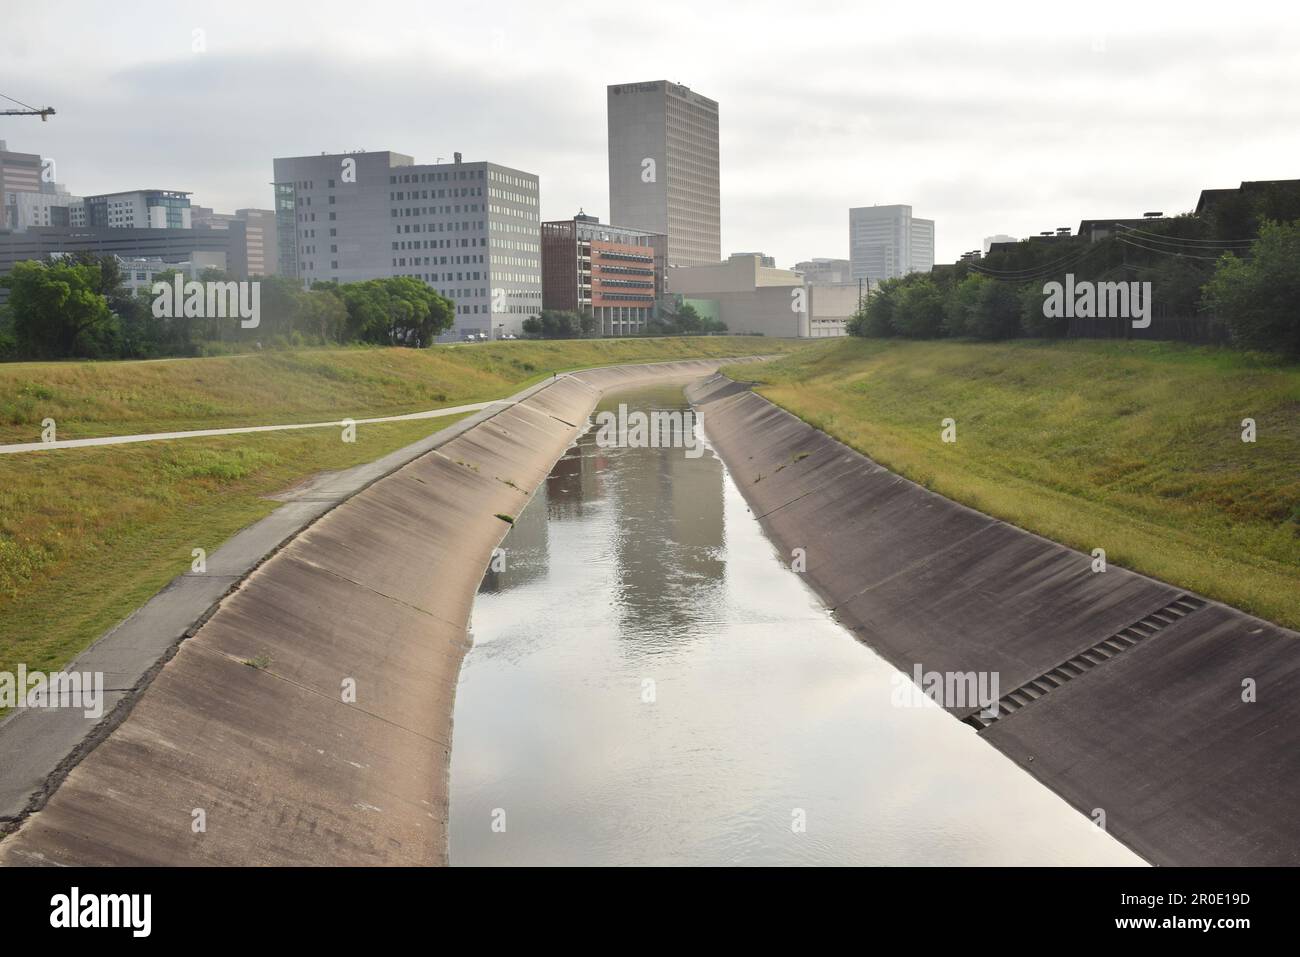 La bellissima città di Houston con un canale che va proprio dal centro Foto Stock